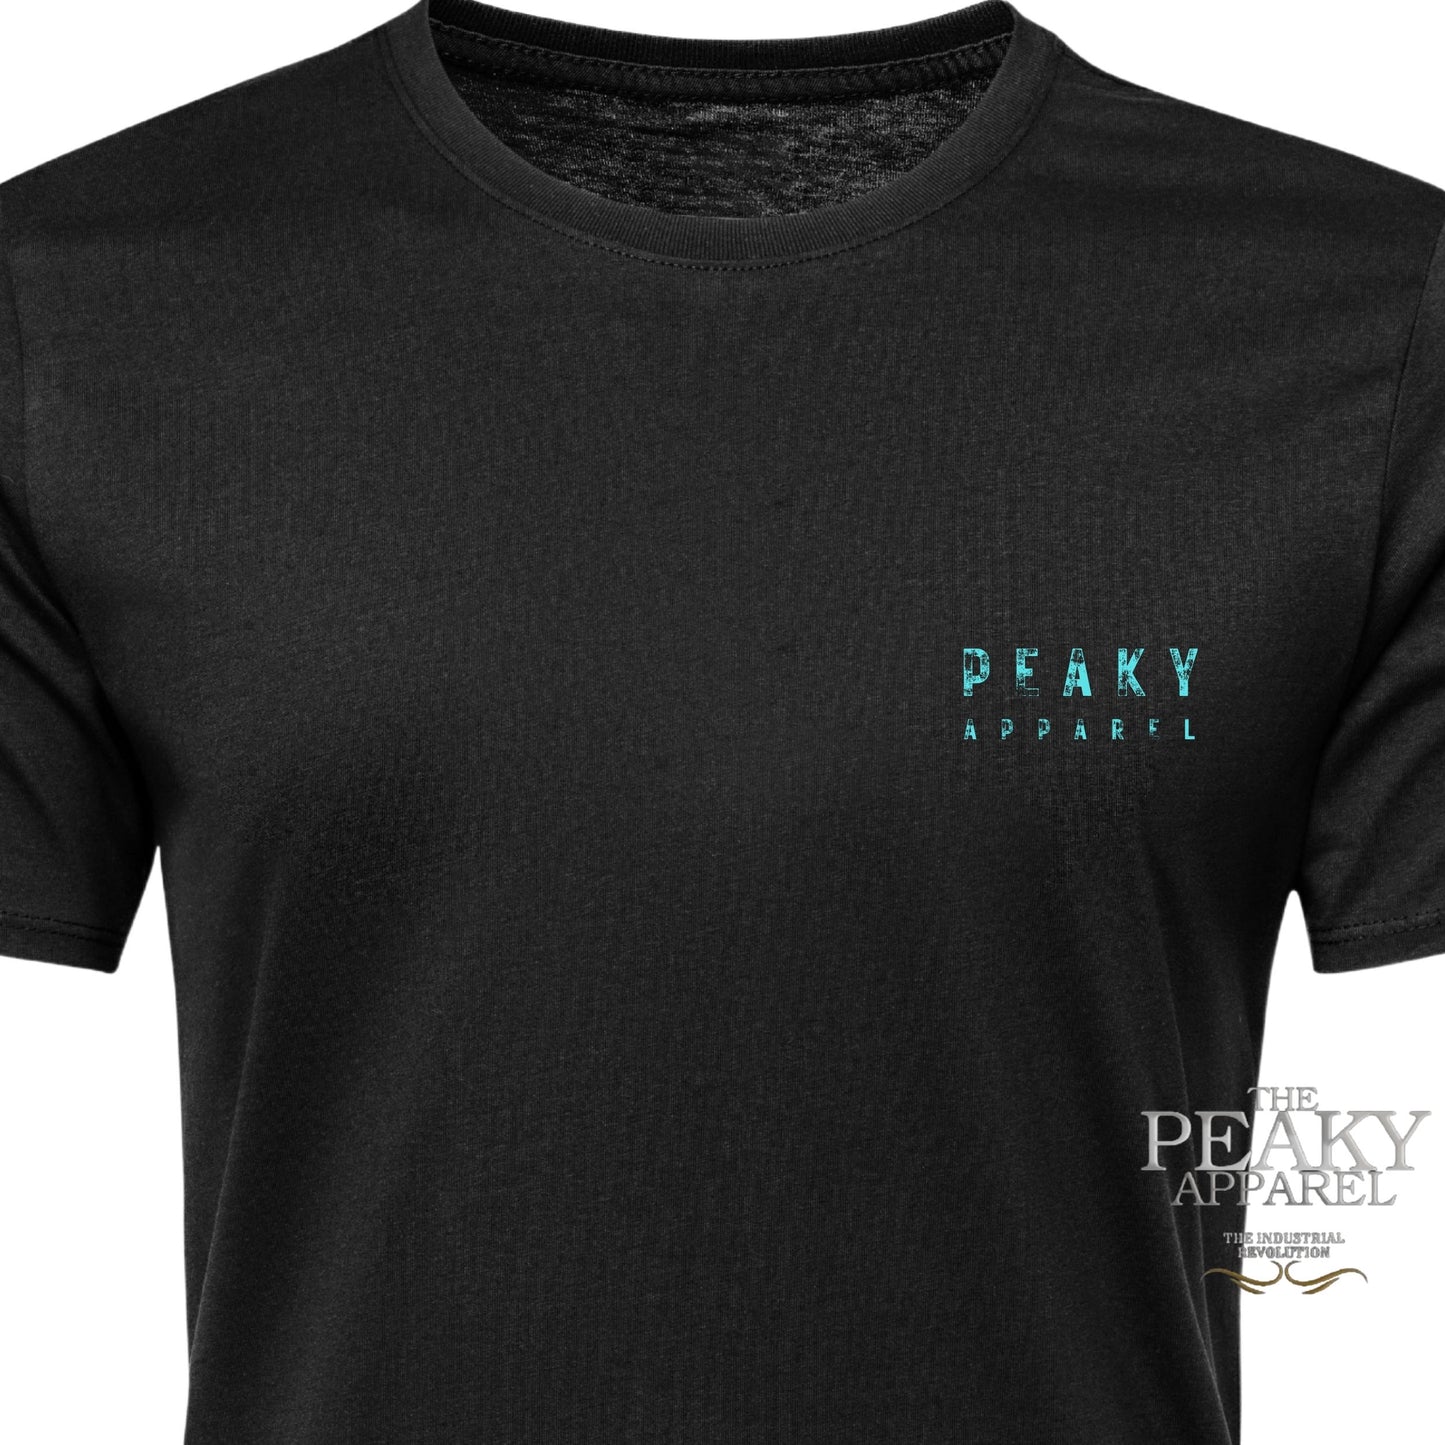 Geometric Phoenix Design DTF Casual T-Shirt Peaky Apparel Design Mens Trending Cool